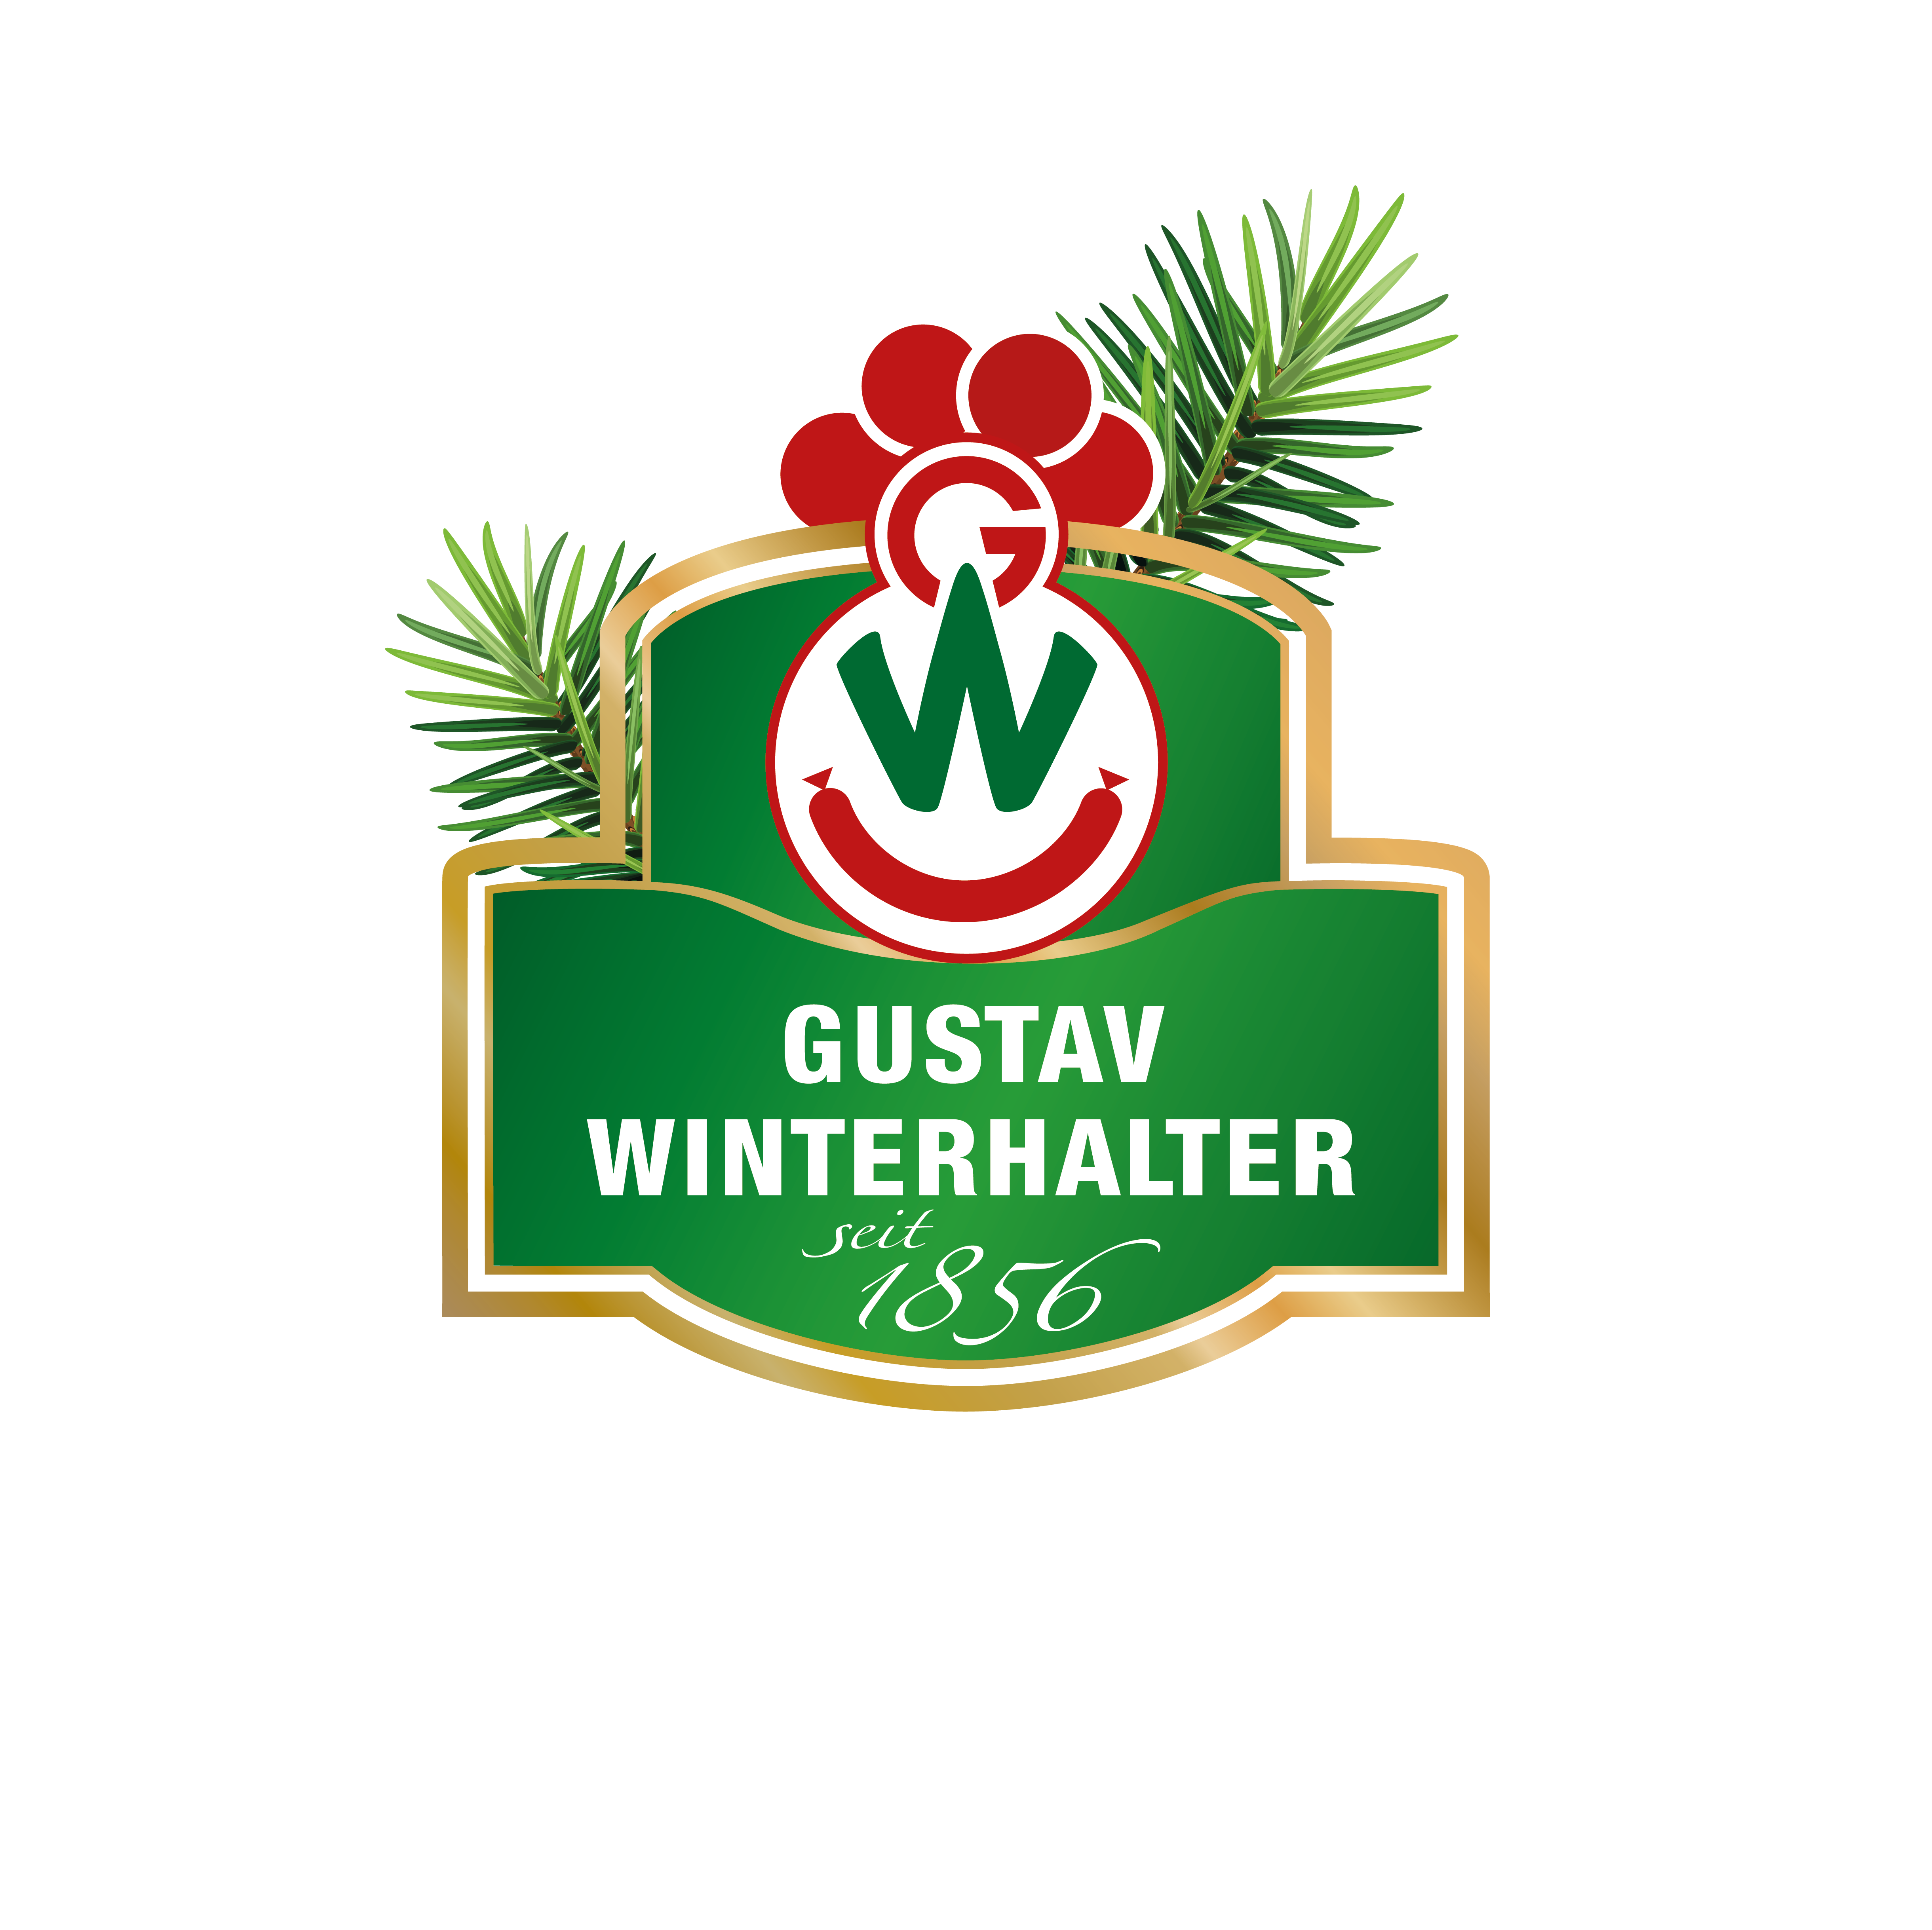 Gustav Winterhalter GmbH